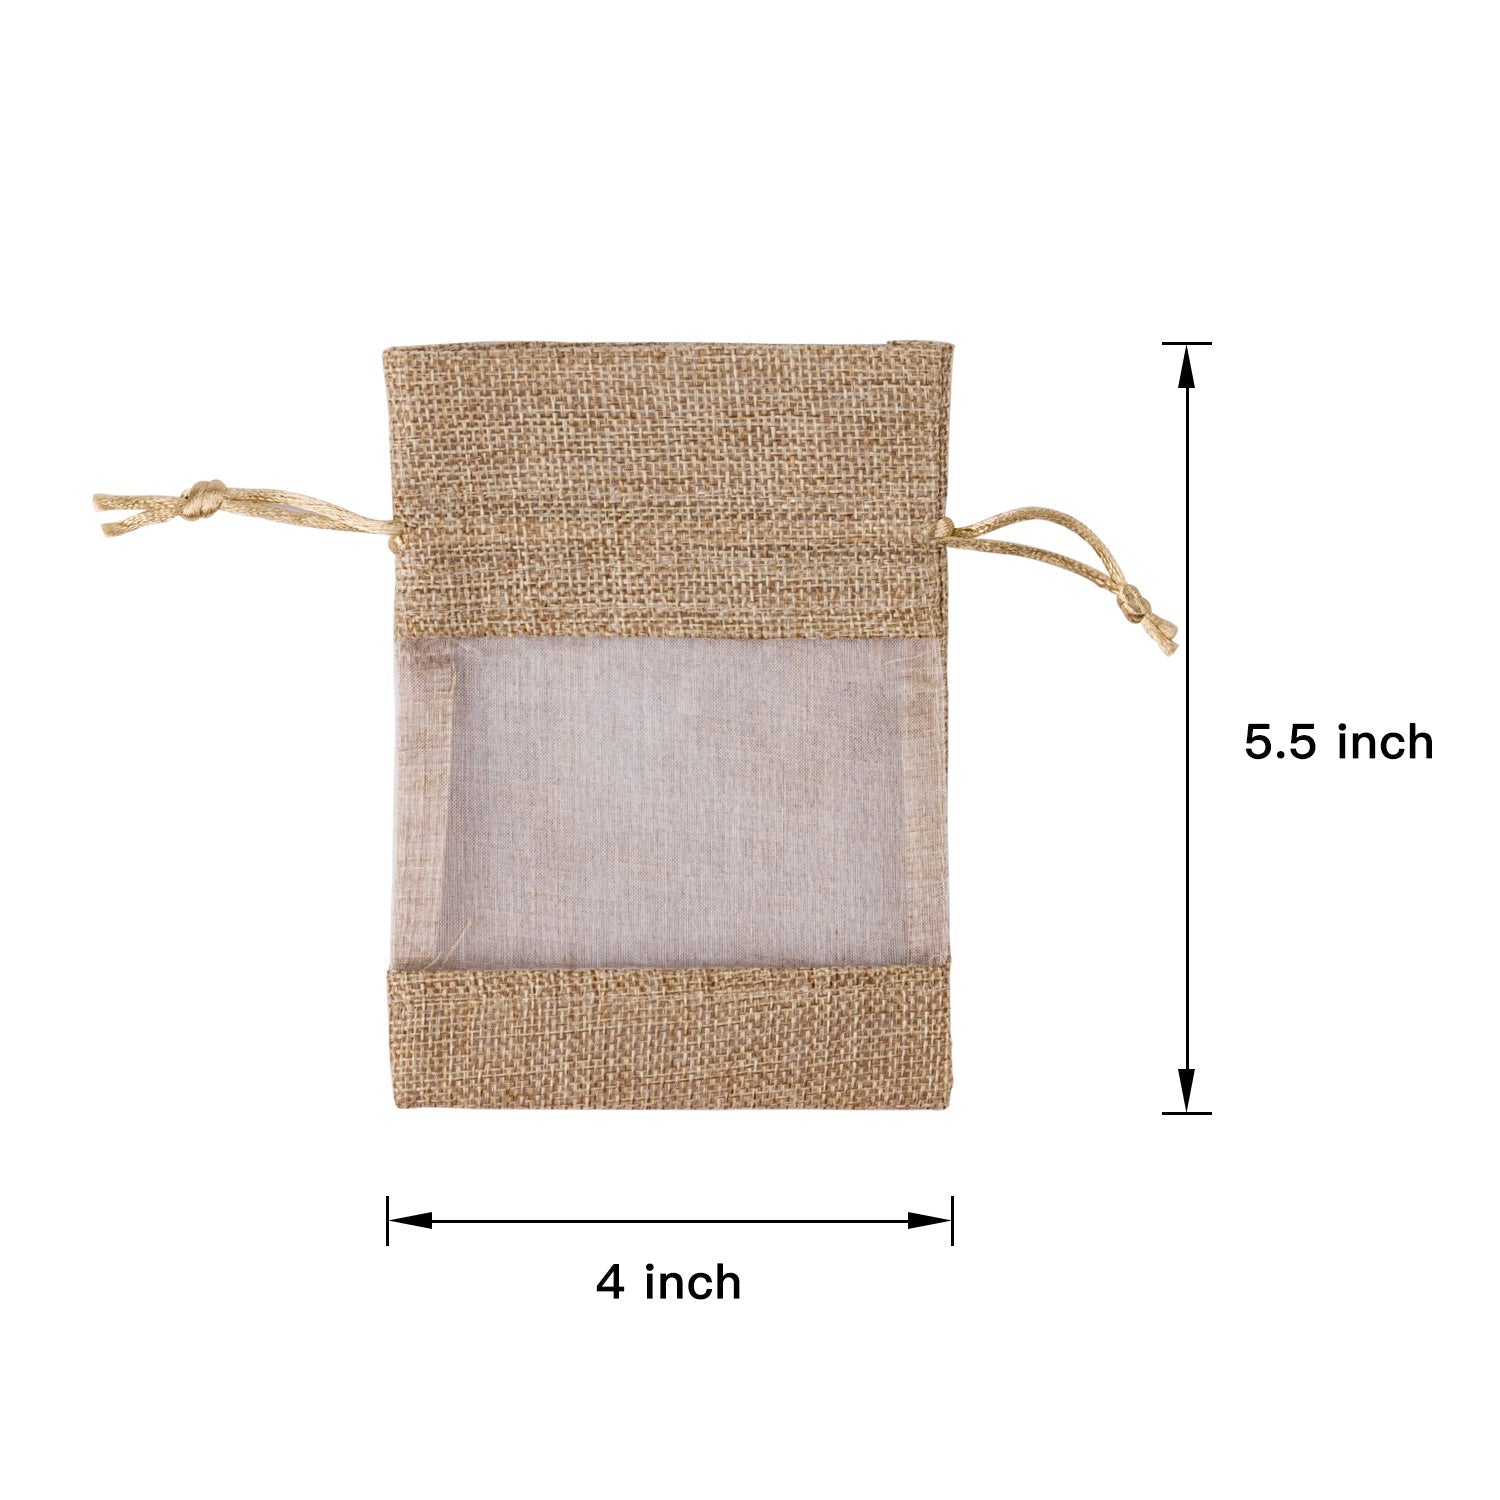 Burlap Drawstring Gift Bag - 4 x 5.5 inch/ 5 x 7 inch - Tan